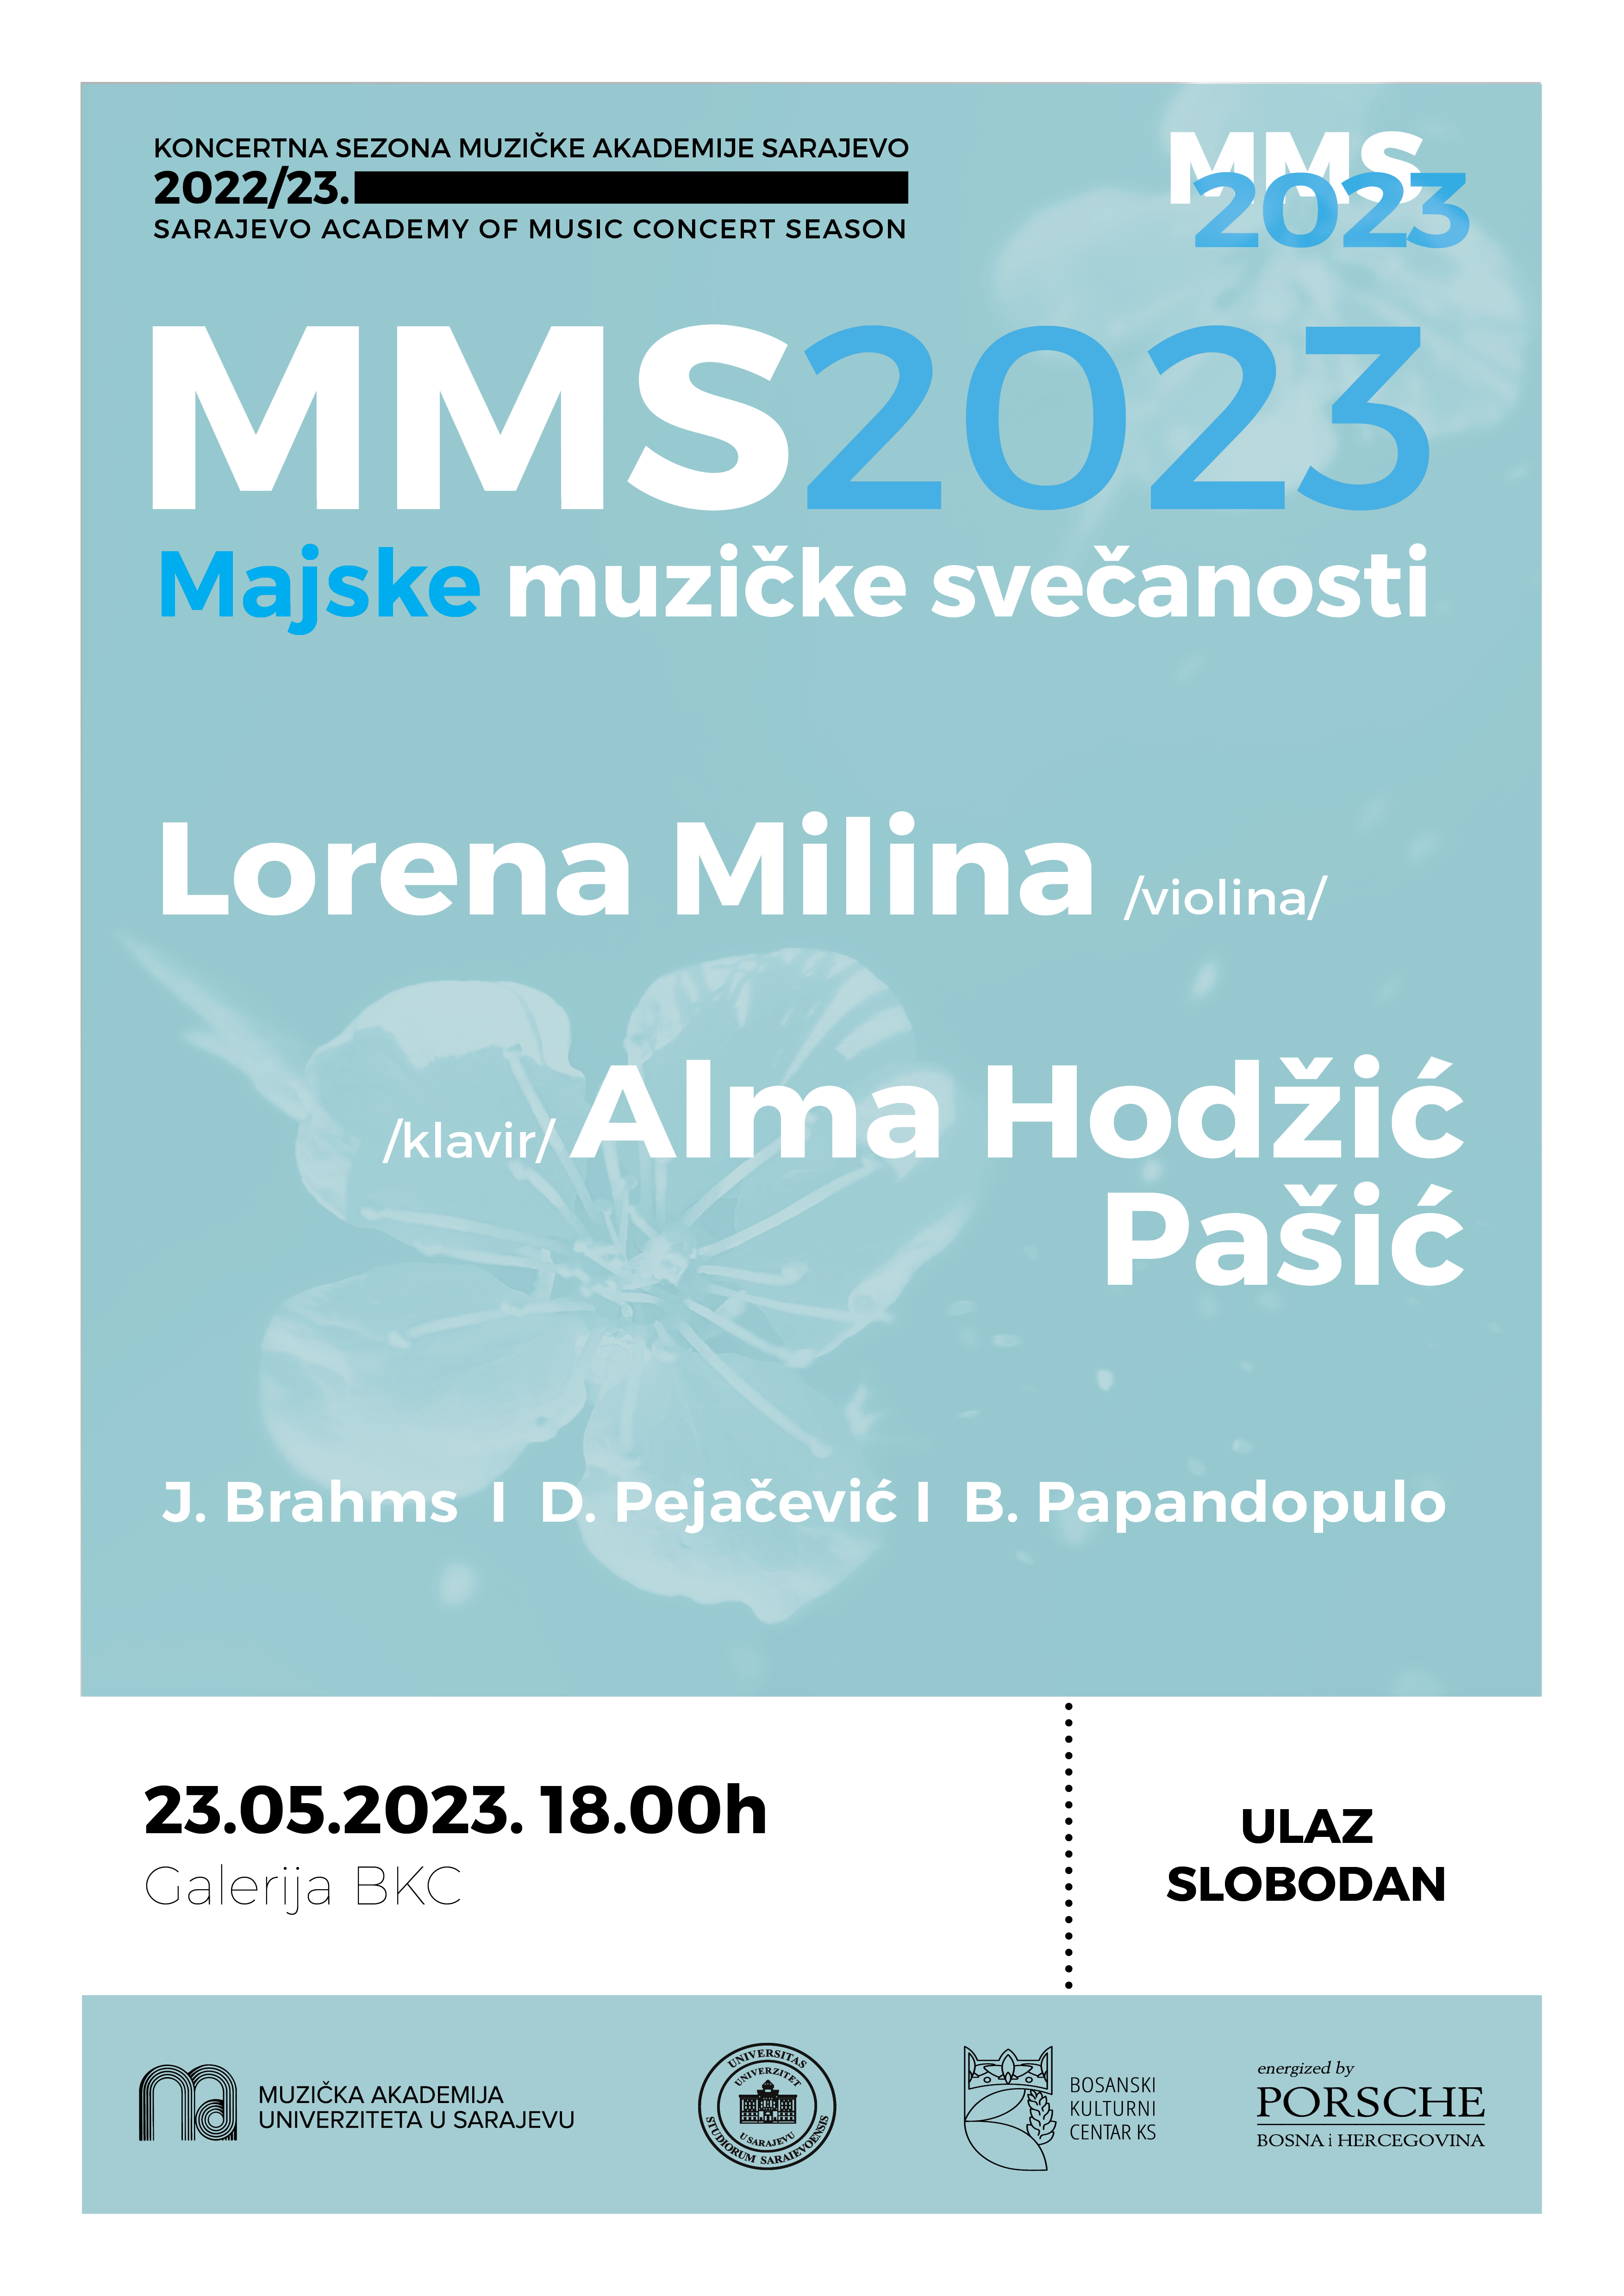 Koncert violinistice Lorene Miline i pijanistice Alme Hodžić Pašić pod okriljem Majskih muzičkih svečanosti